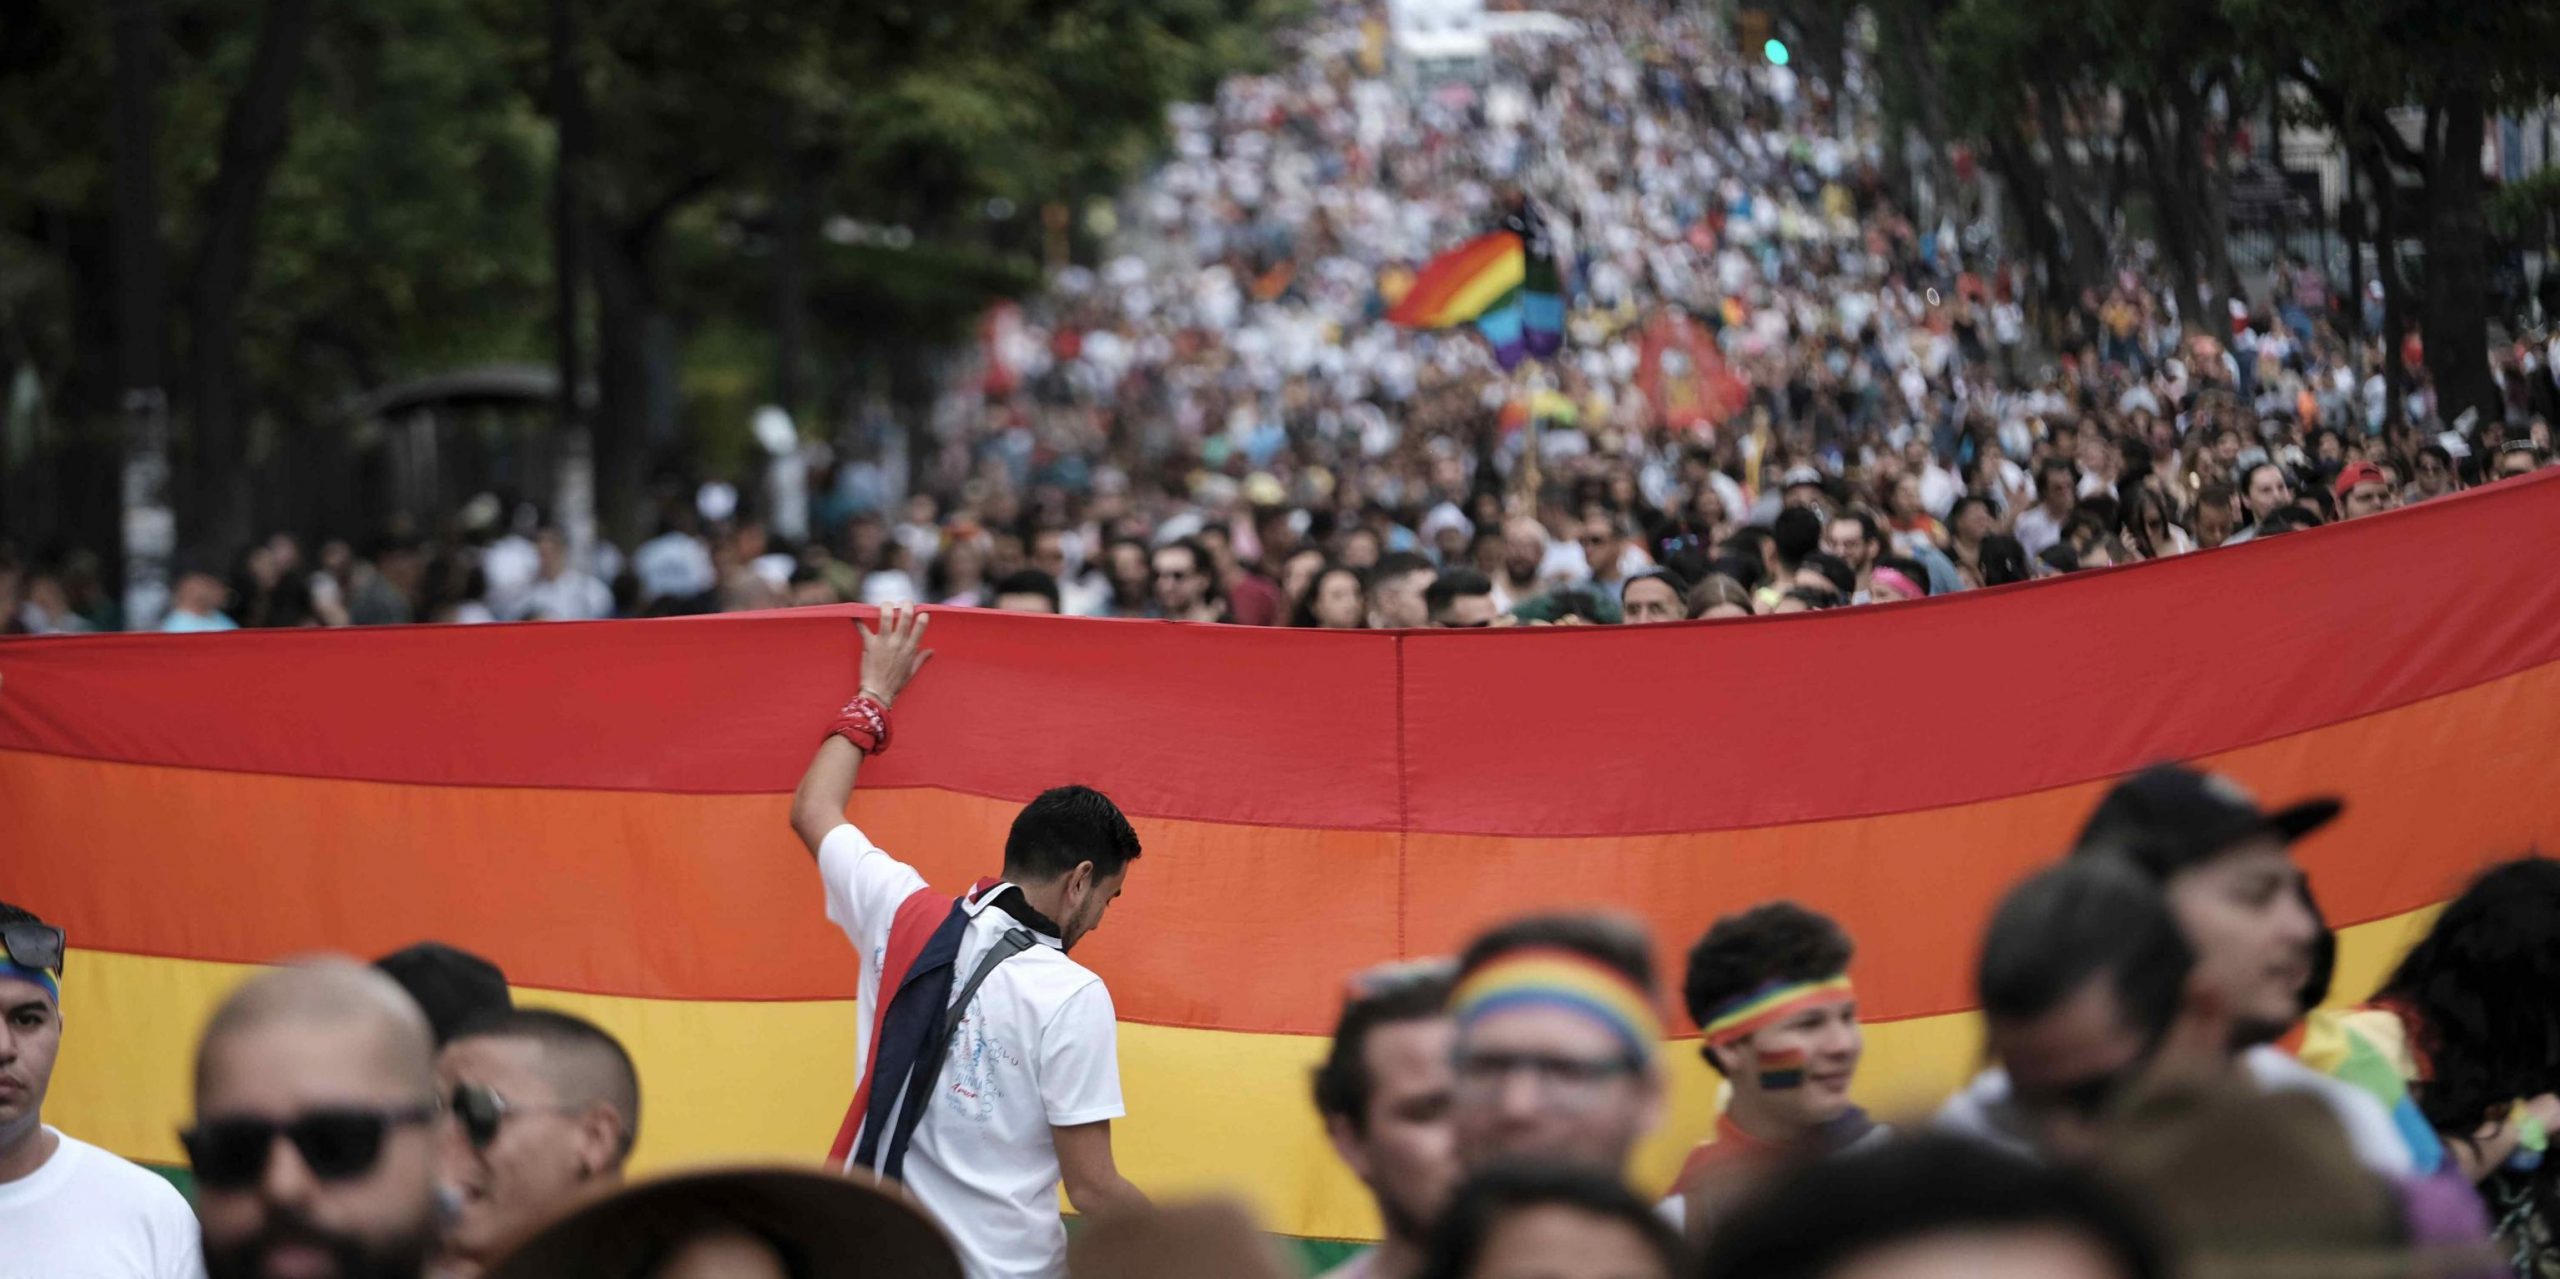 Migliaia di persone partecipano alla Marcia della diversità per chiedere rispetto, uguaglianza e garanzia dei diritti umani della popolazione LGBTQ, a San Jose, in Costa Rica, il 1 ° luglio 2018 (EPA/JEFFREY ARGUEDAS)